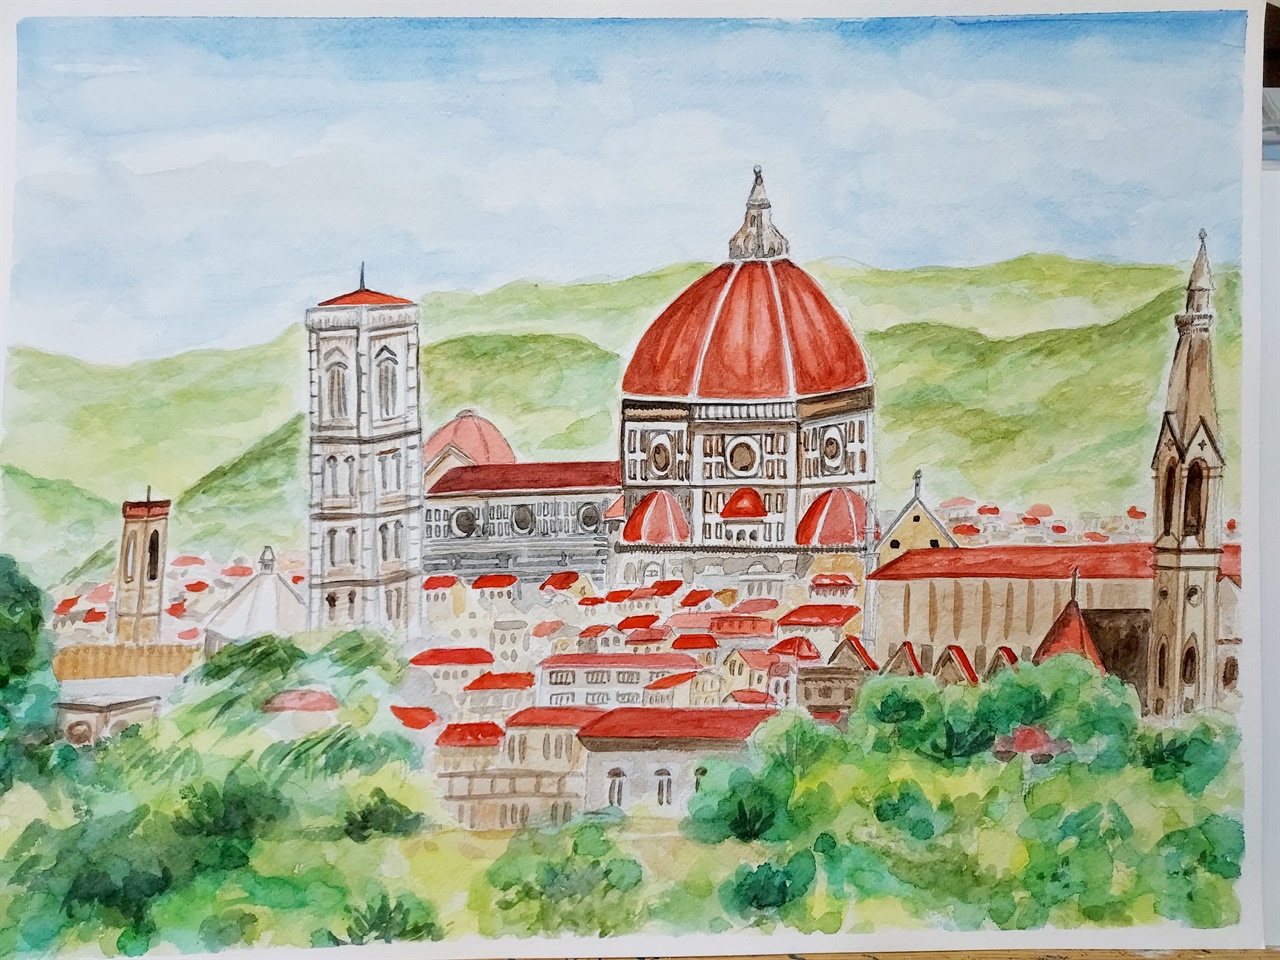 피렌체 여행에서 사온 달력의 그림을 보고 스케치해서 수채물감으로 칠한 수채화